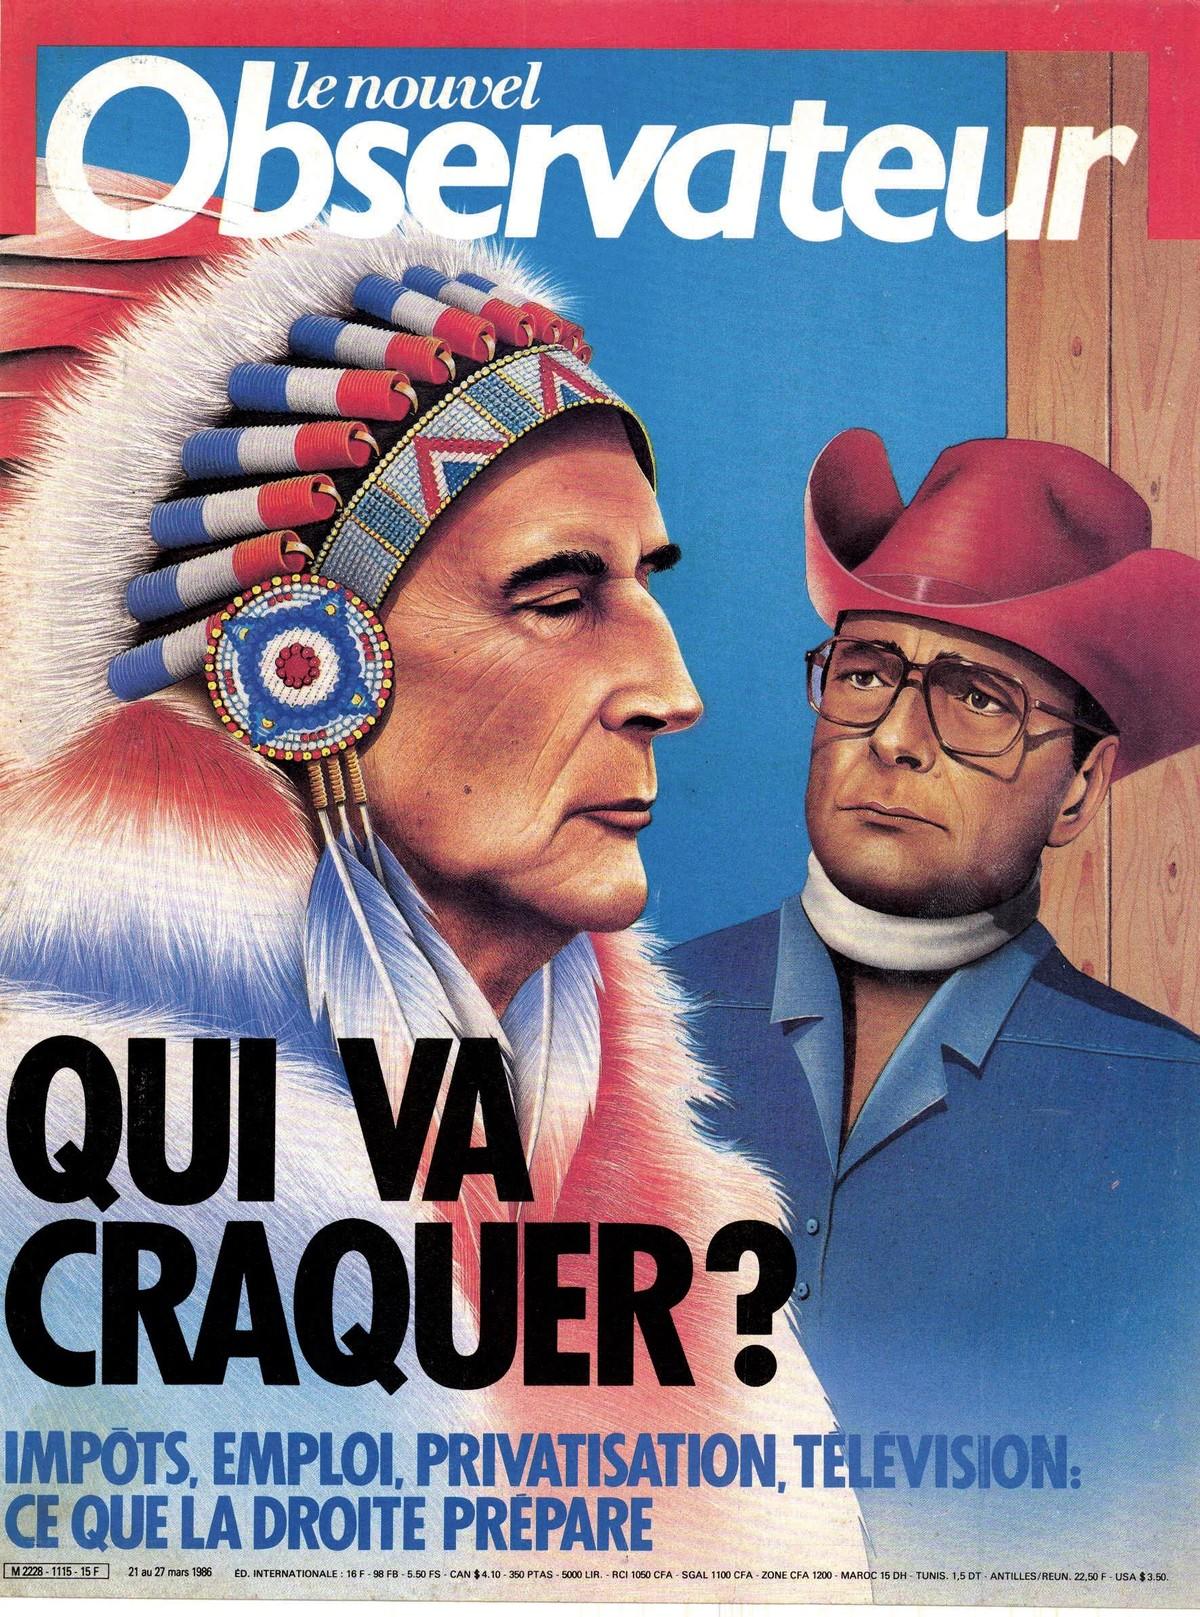 Une du magazine Le nouvel Observateur pour la première cohabitation, entre François Mitterrand et Jacques Chirac en 1986.